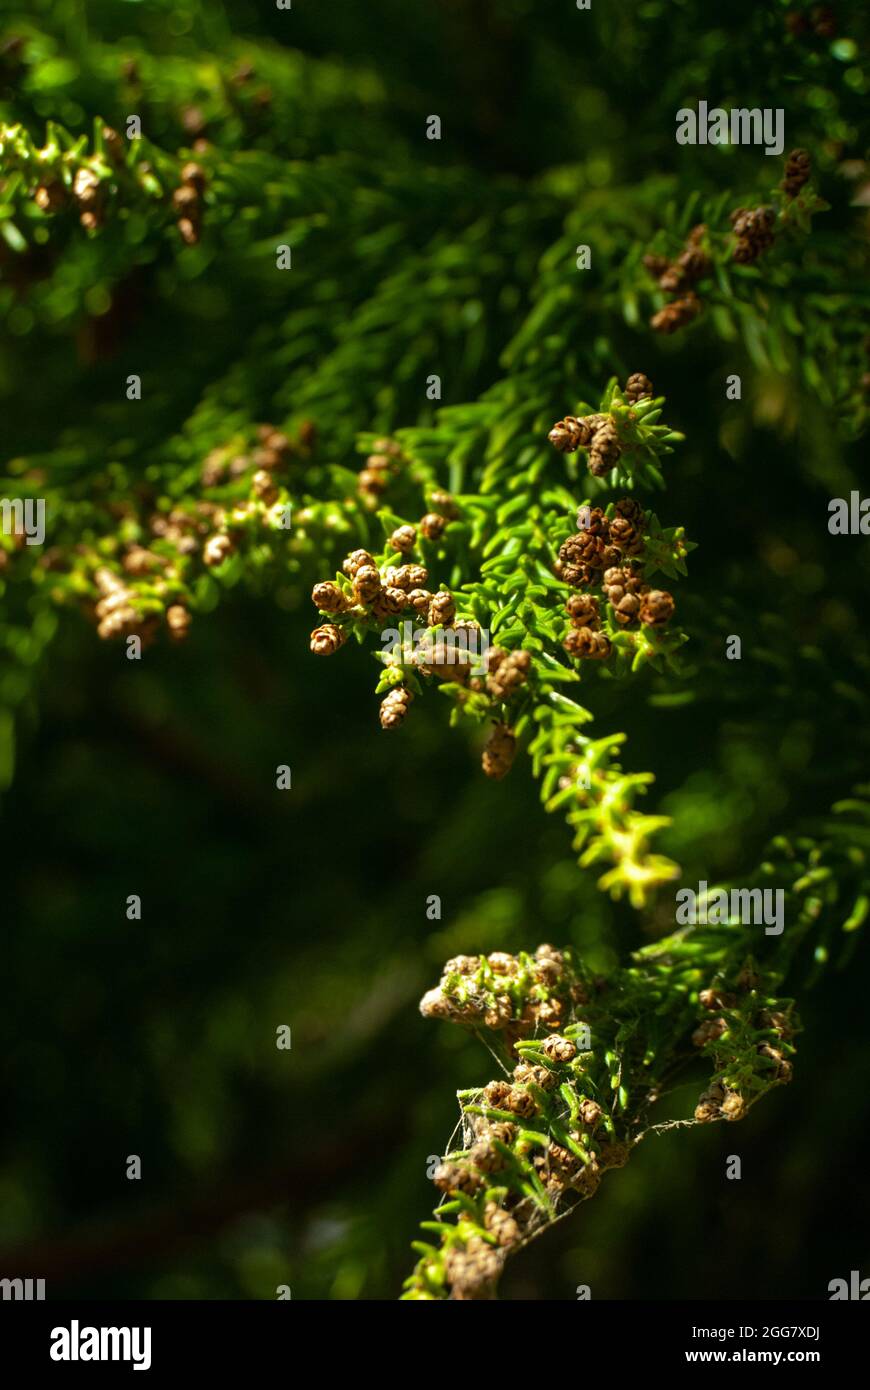 Junge japanische Zedernzweige mit kleinen Zapfen im Sonnenlicht - Cryptomeria japonica, Vertikal, selektiver Fokus Stockfoto